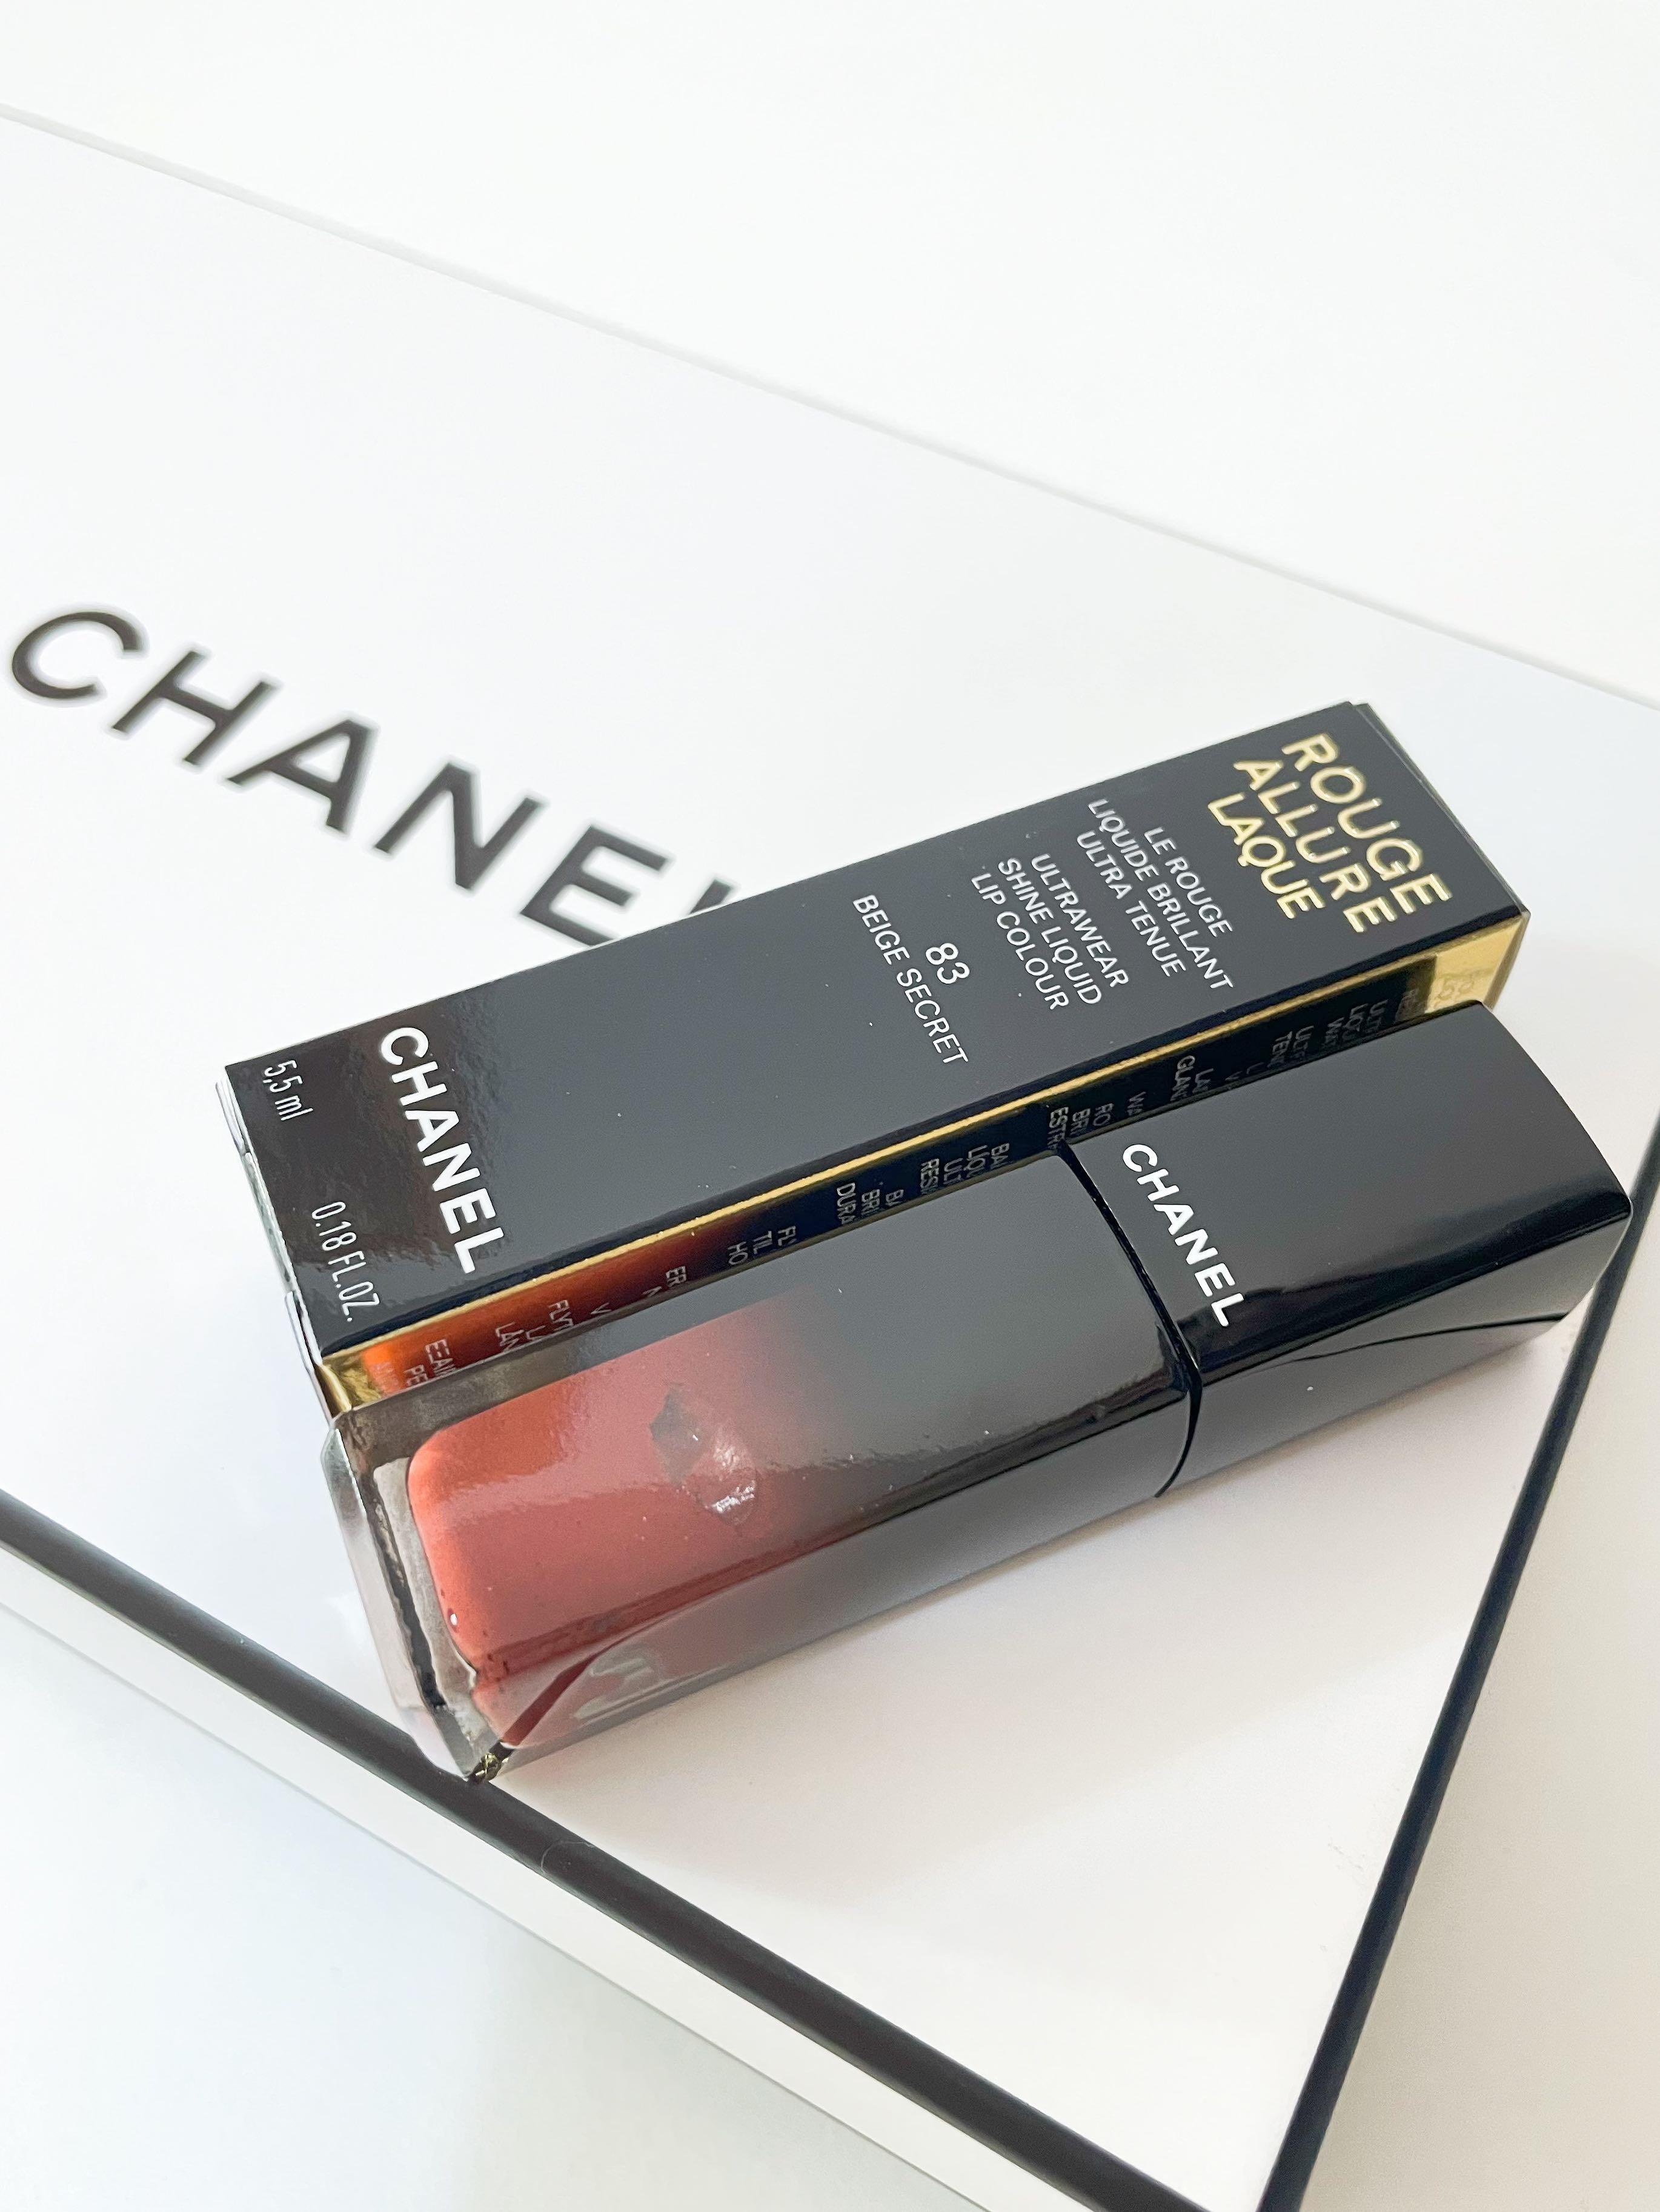 พรอมสง  Chanel rouge allure laque  83 Beige secret   LINE SHOPPING